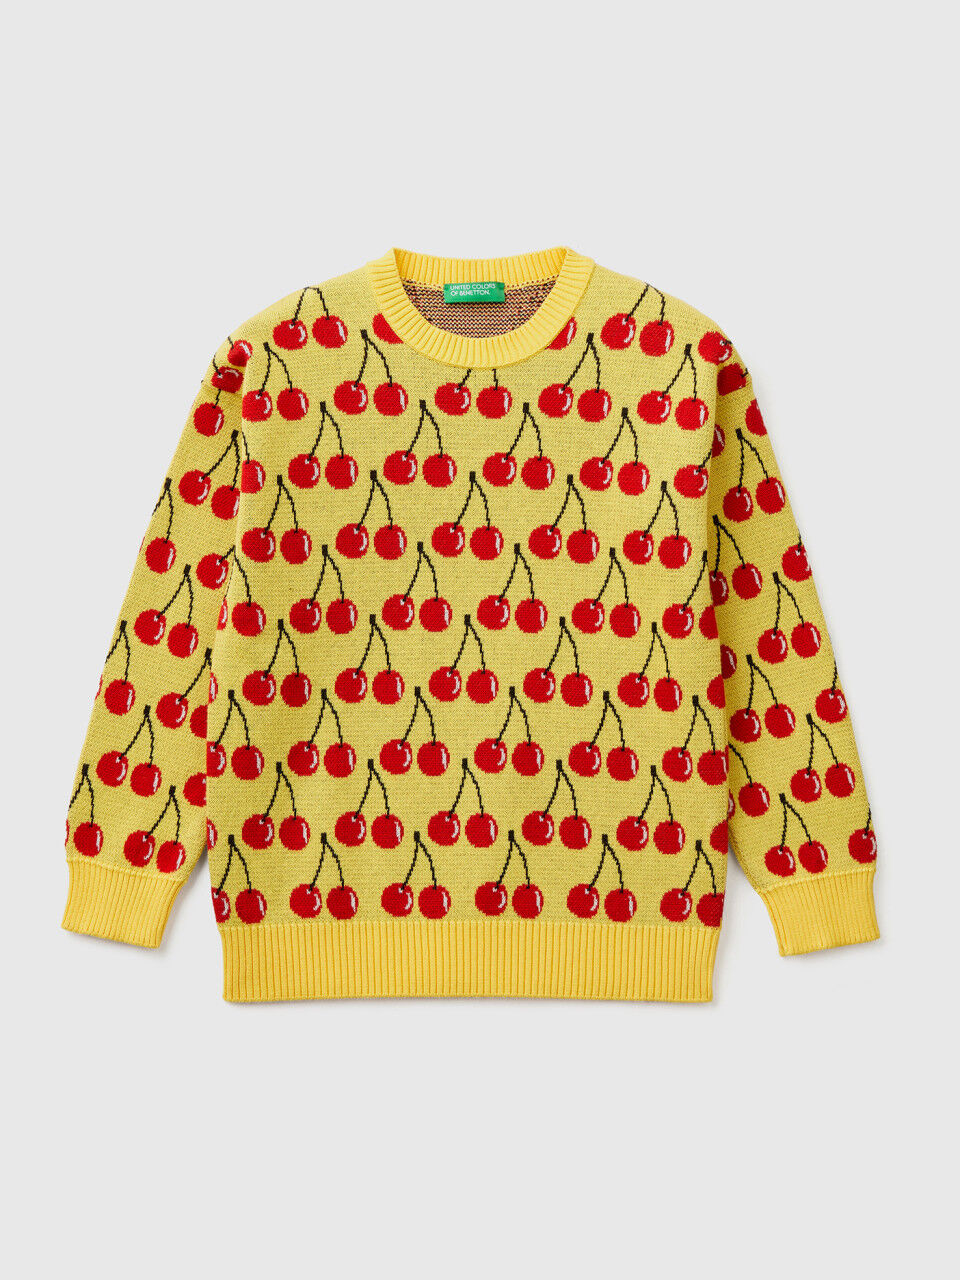 Camisola amarela com padrão de cerejas